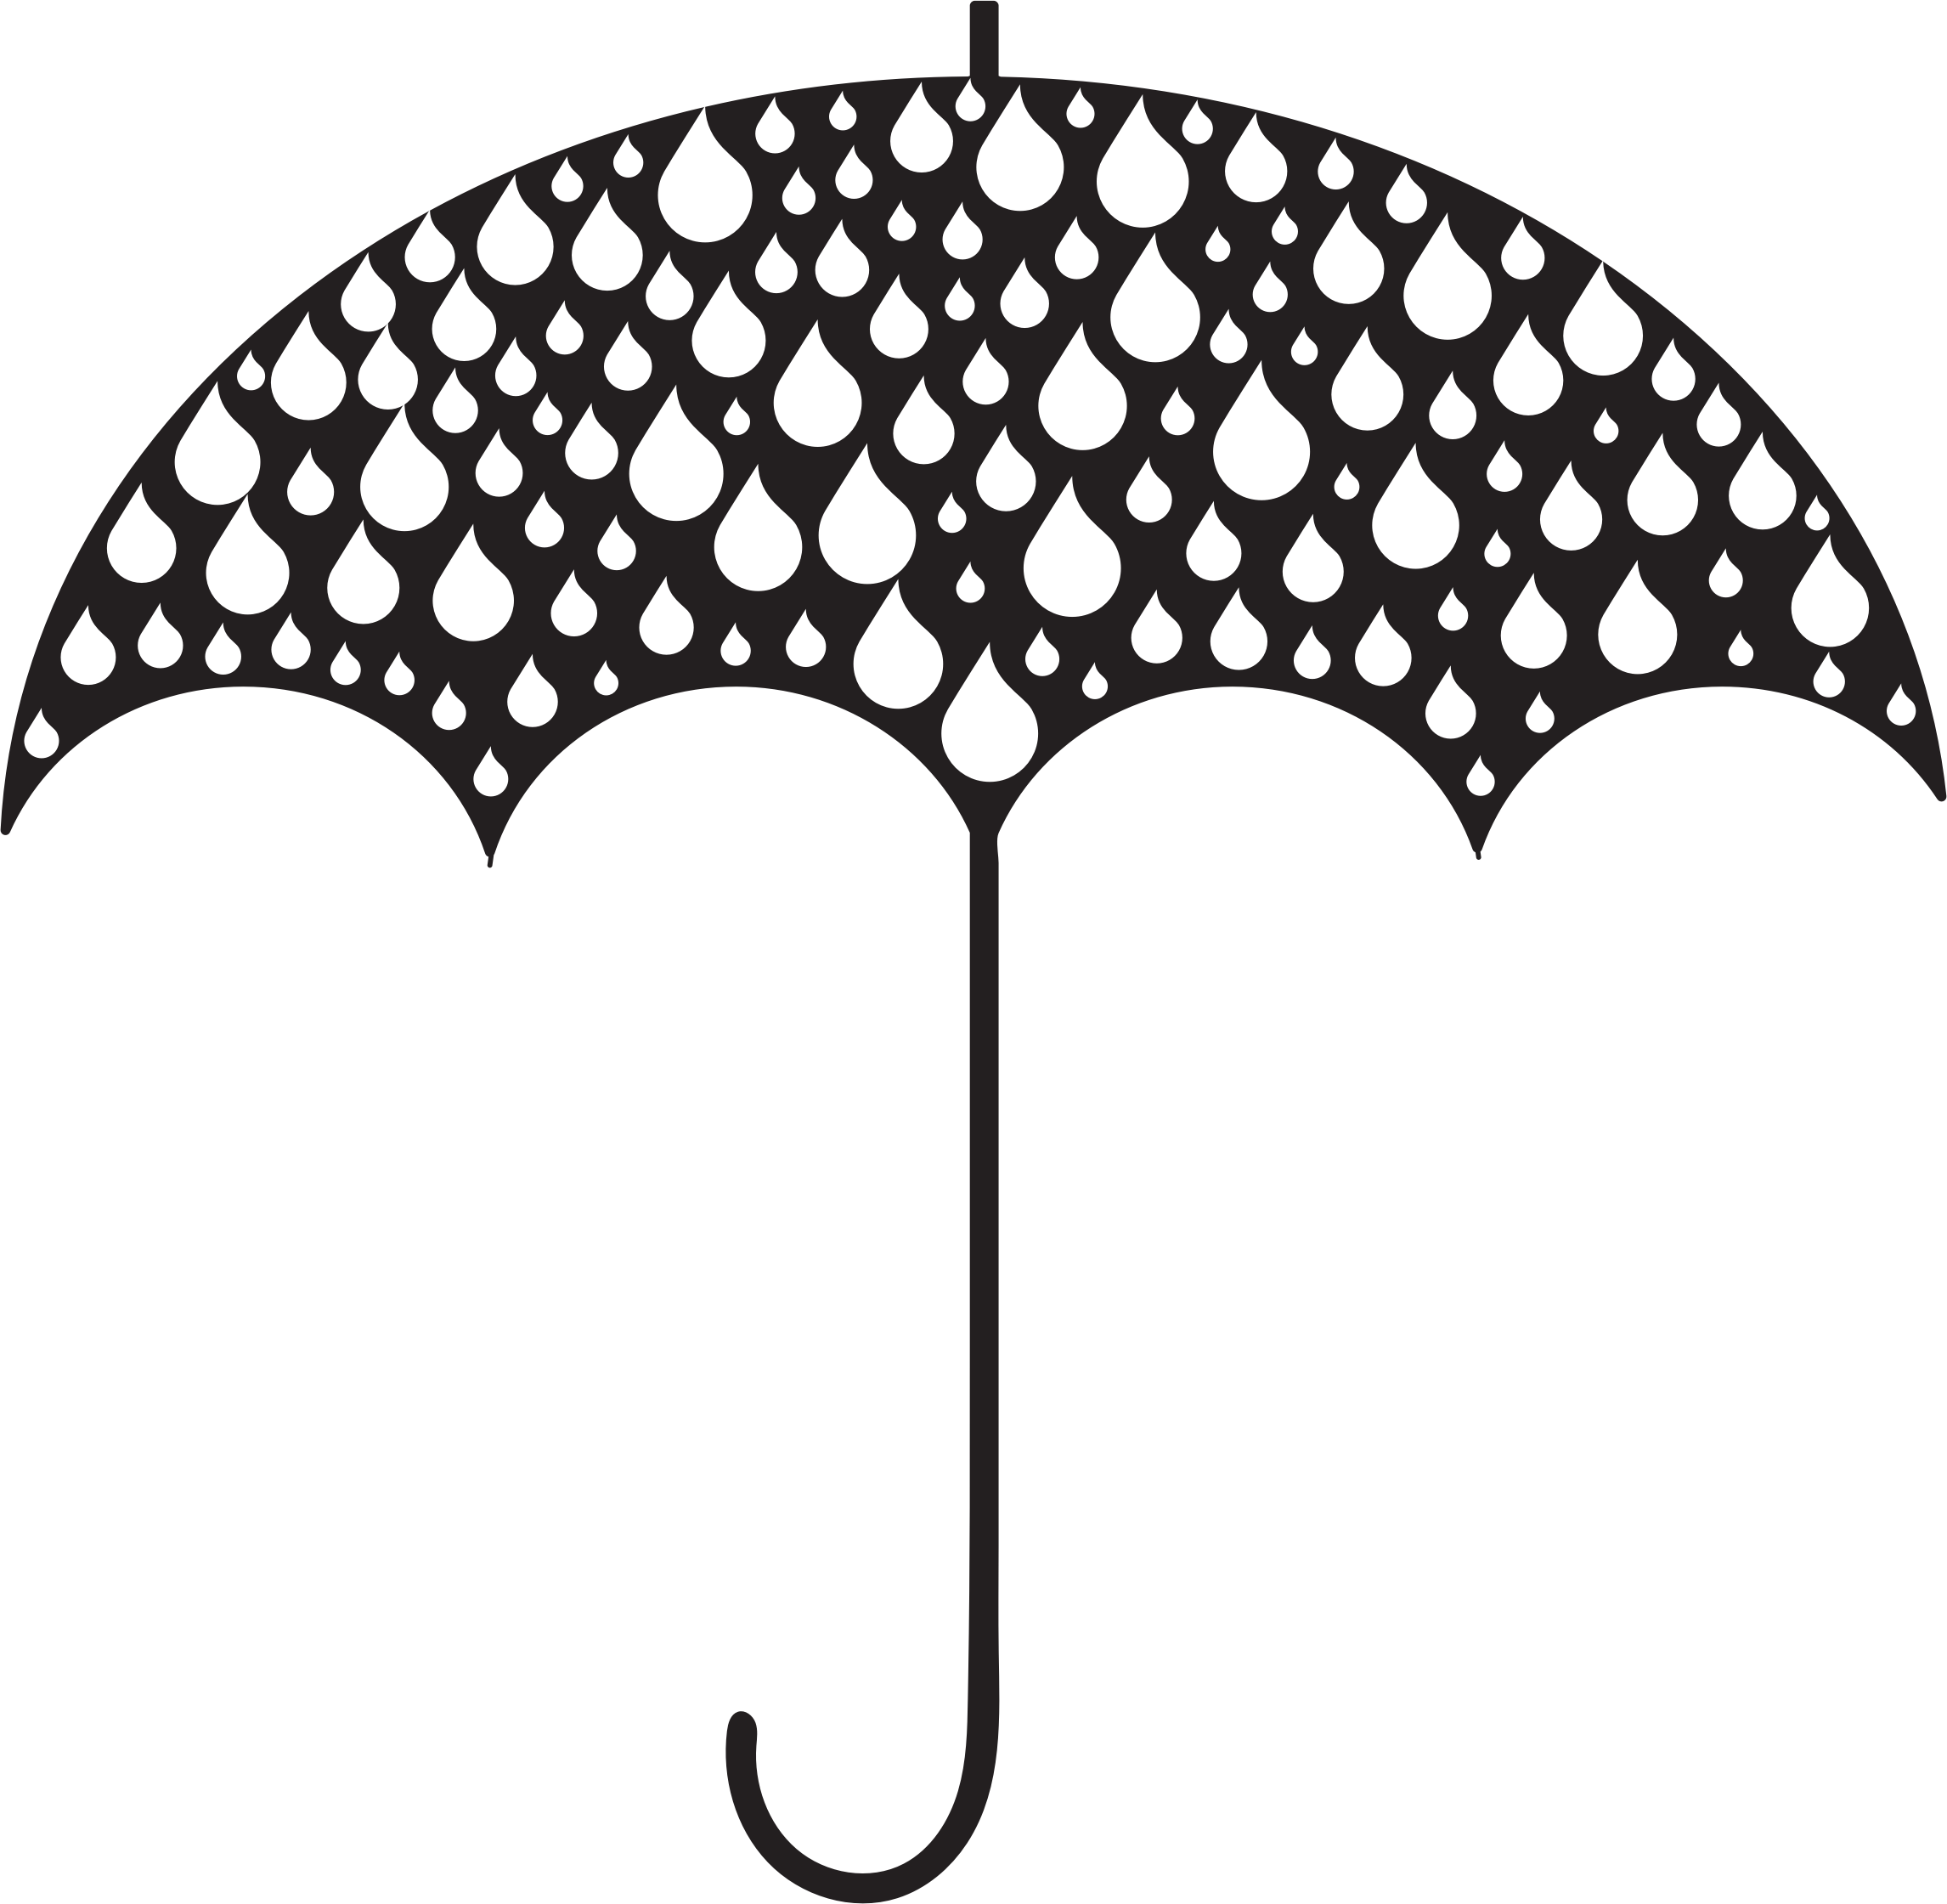 Rain Drops Umbrella Silhouette - Rain Silhouette (2292x2241)